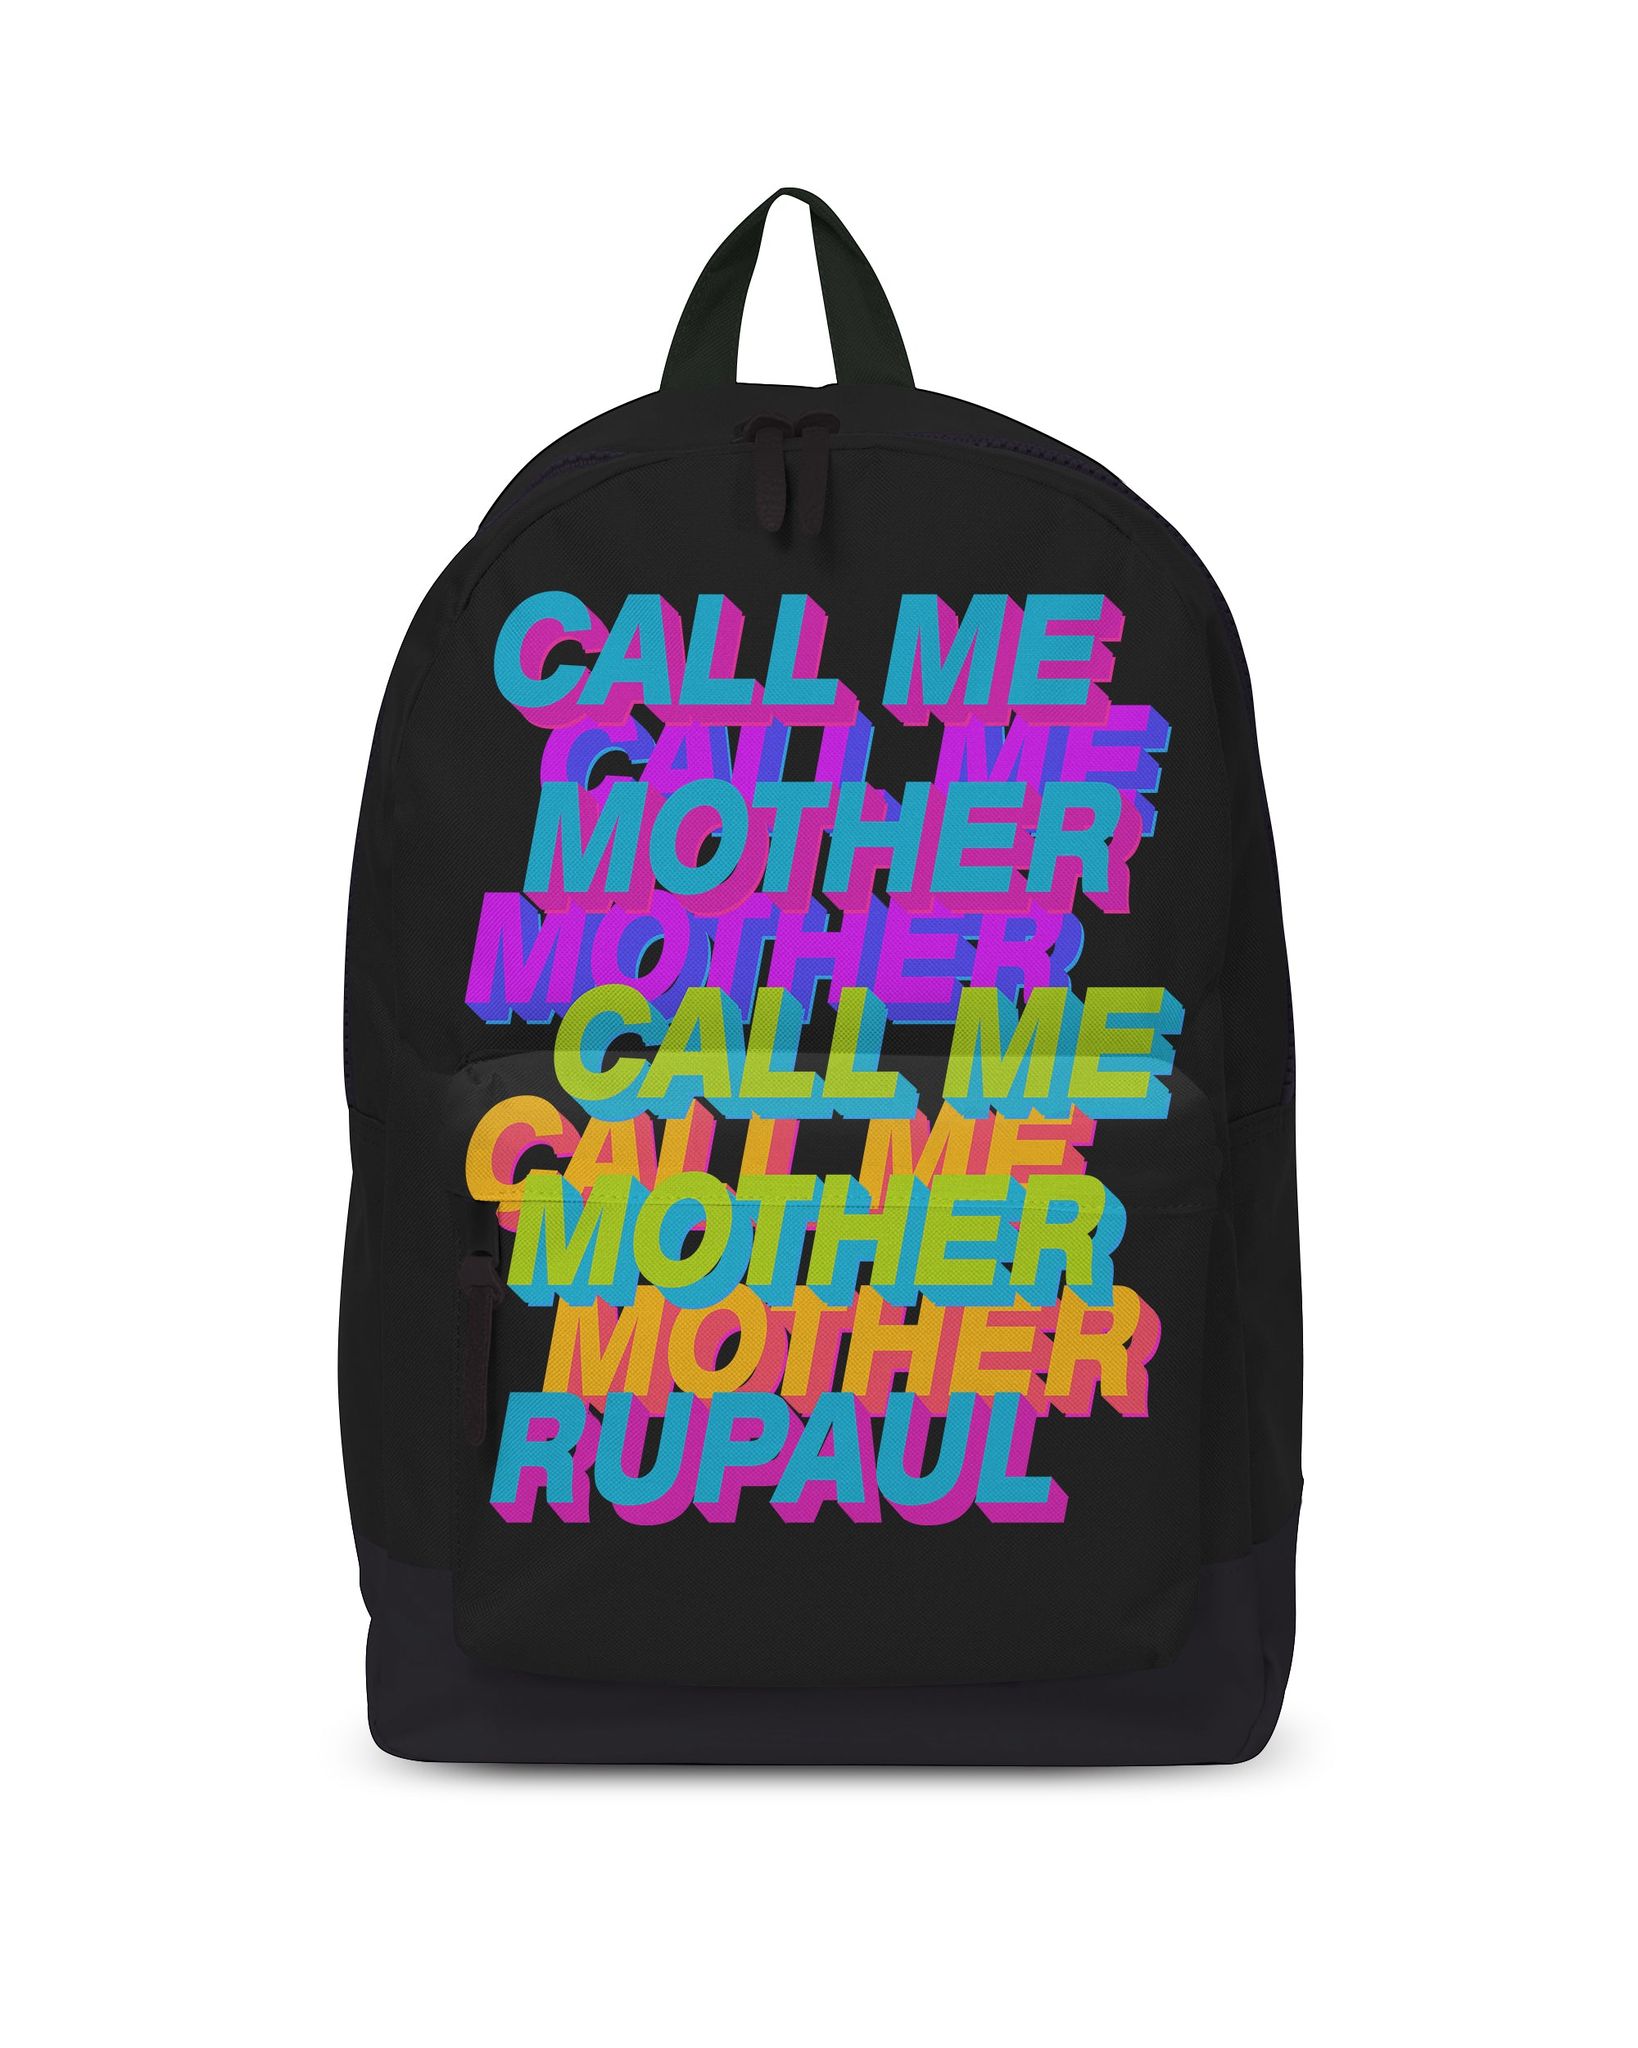 Wholesale Rocksax Ru Paul Call Me Mother Backpack